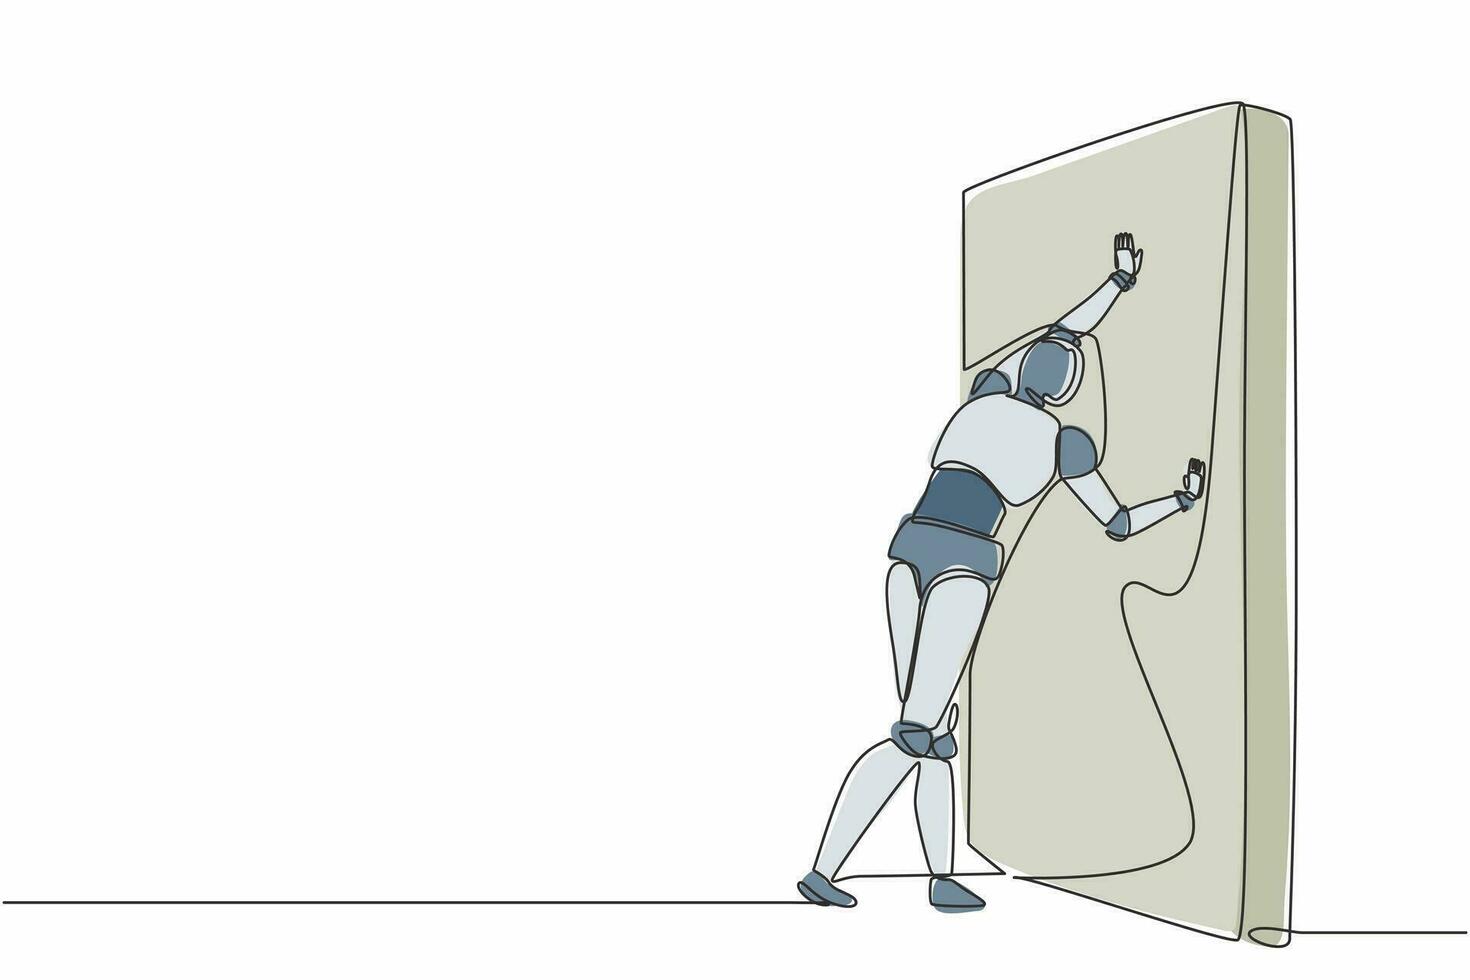 robot di disegno a linea continua che spinge il muro. sfida e soluzione del problema. organismo cibernetico robot umanoide. sviluppo futuro della robotica. illustrazione grafica vettoriale di disegno a linea singola